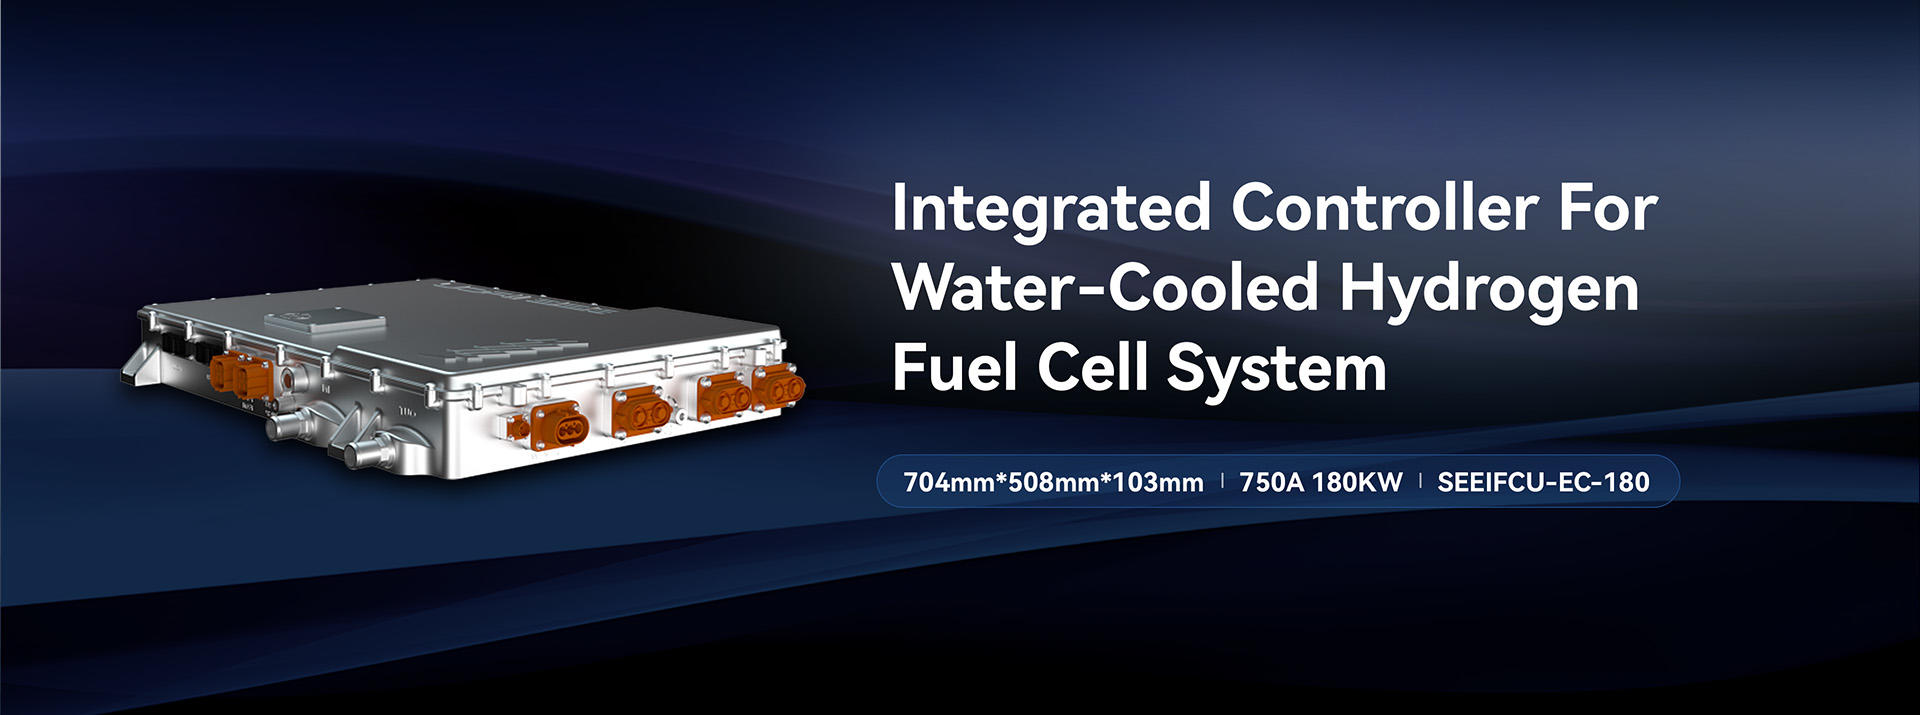 Integrirani upravljač za sustav vodikovih gorivih ćelija hlađen vodom